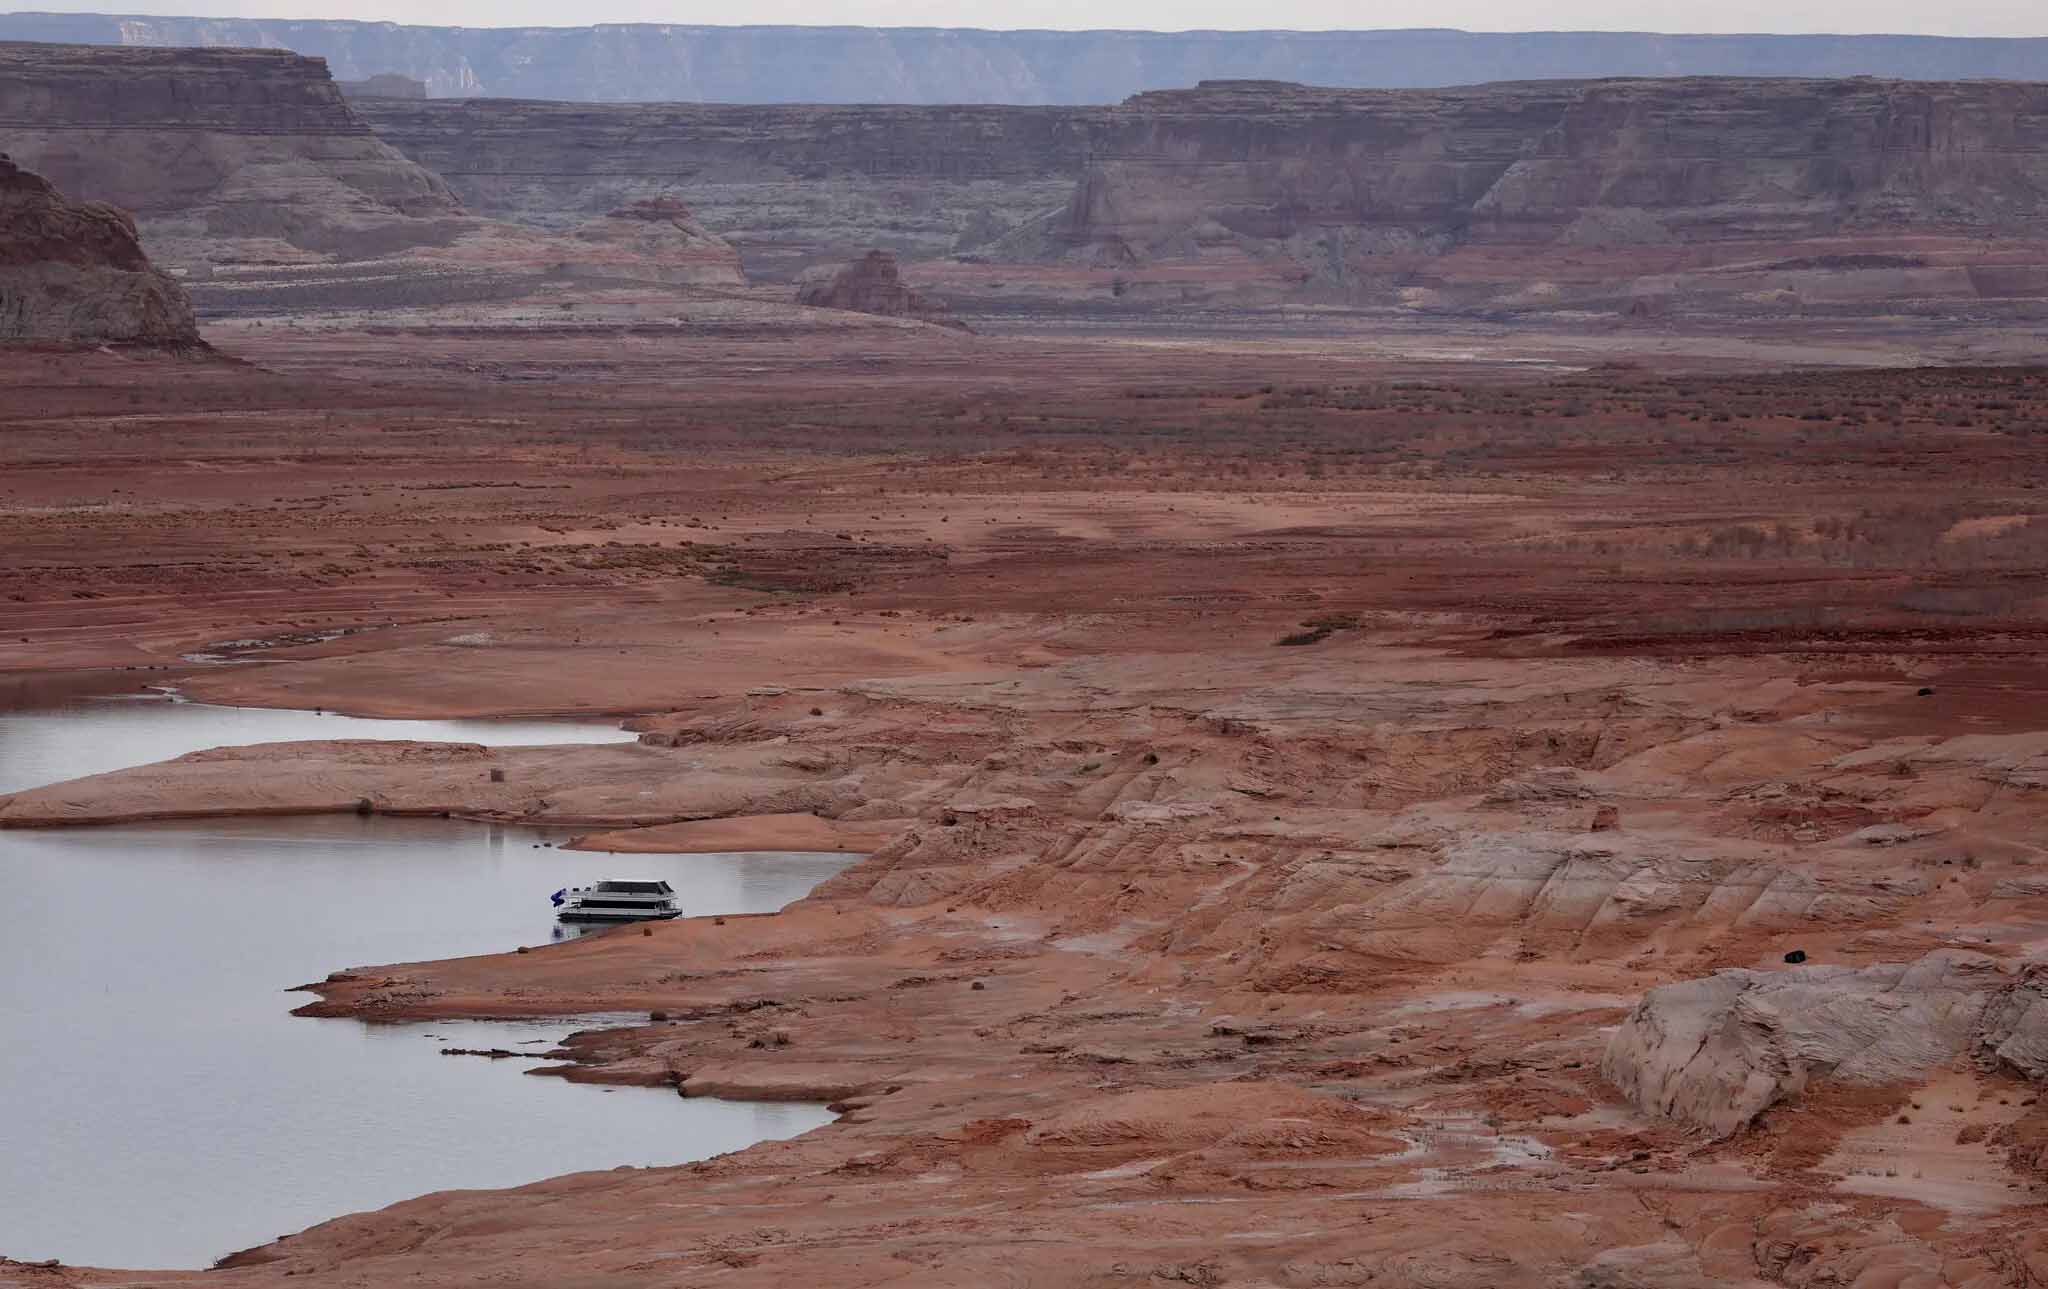 Mundo-Mientras el río Colorado se encoge, Washington se prepara restringir el agua (El Diario Mx)